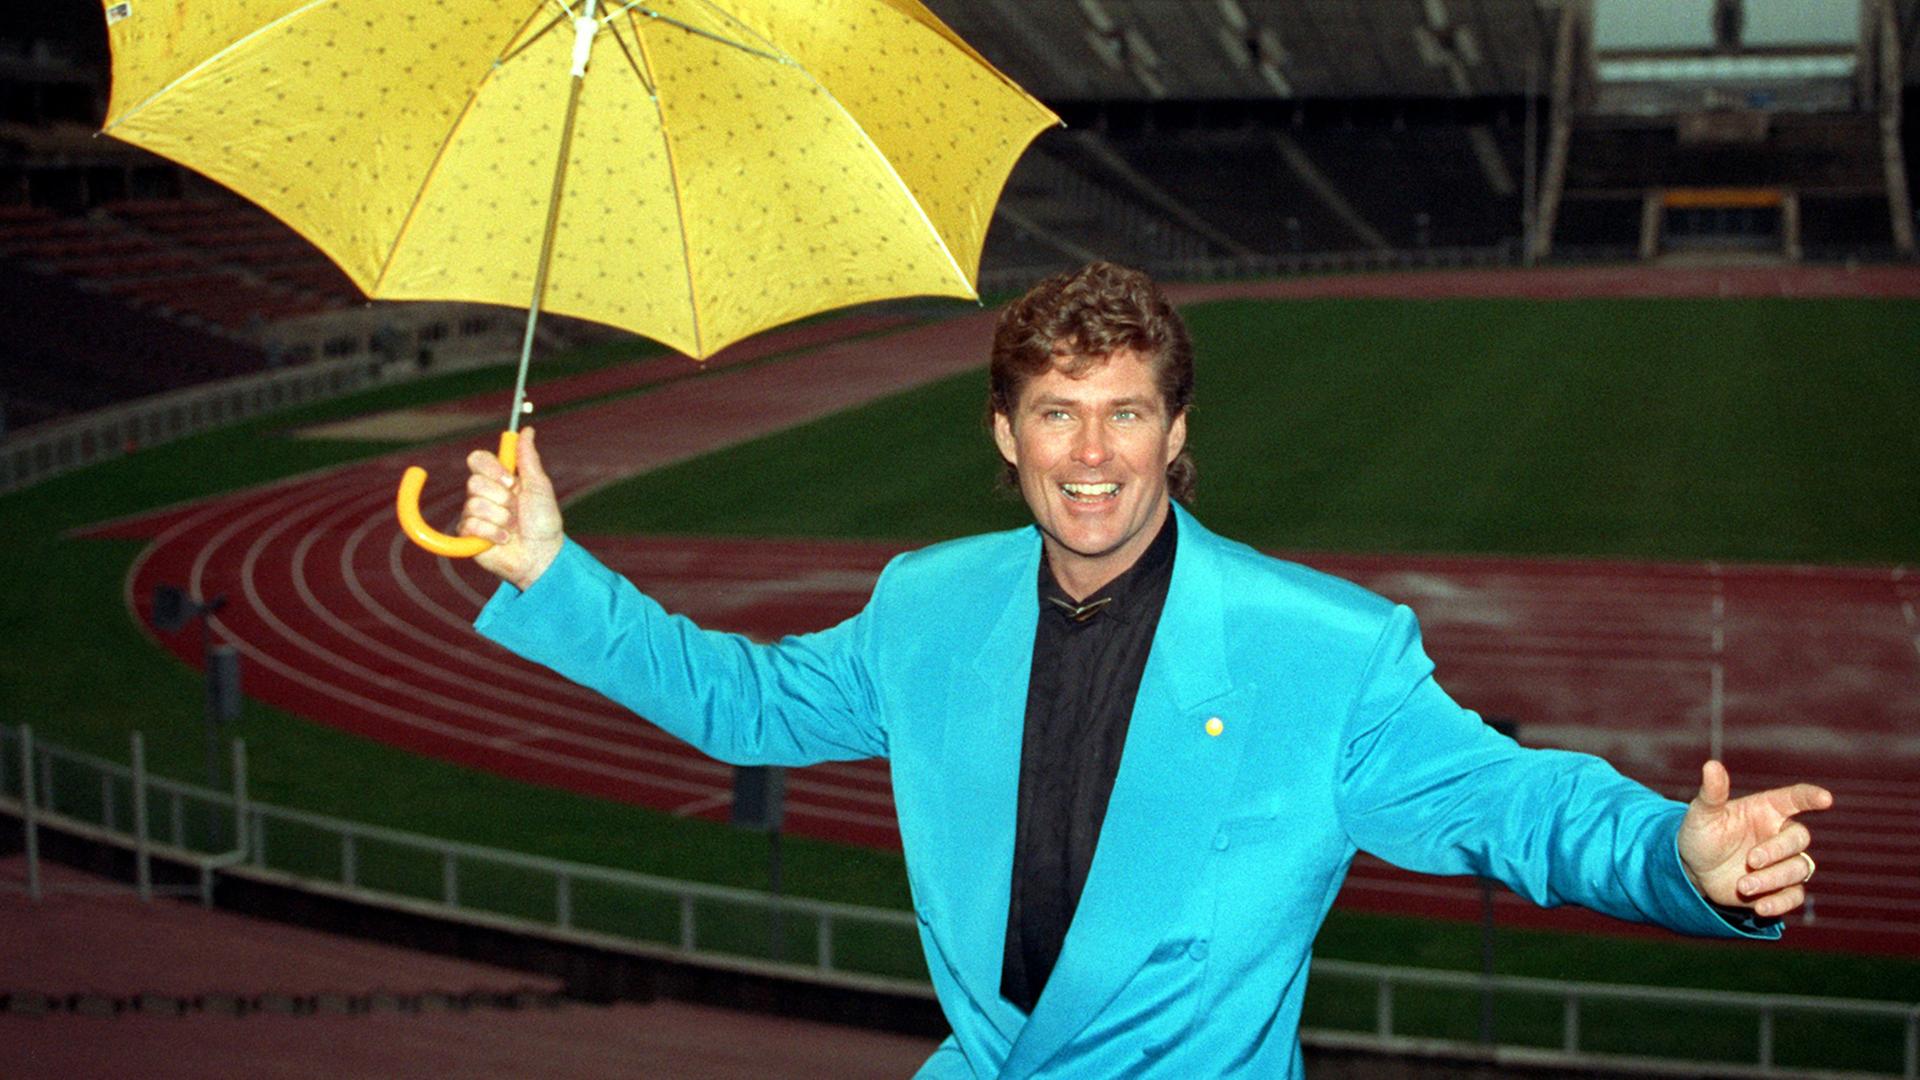 Der amerikanische Popstar David Hasselhoff präsentiert sich lächelnd mit einem gelben Regenschirm im türkisen Anzug.